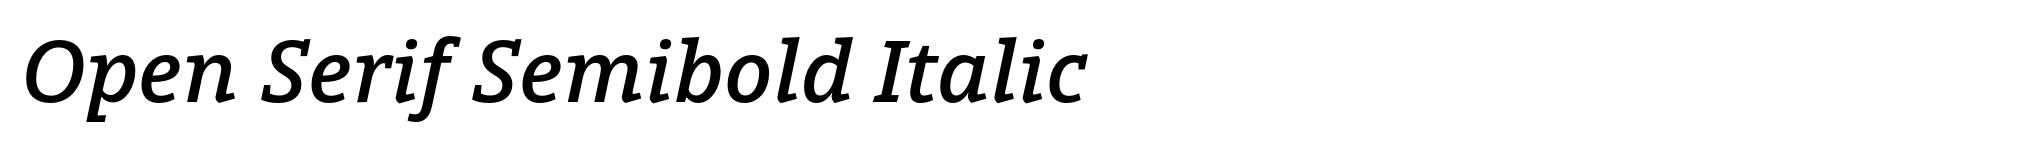 Bild Open Serif Semibold Italic